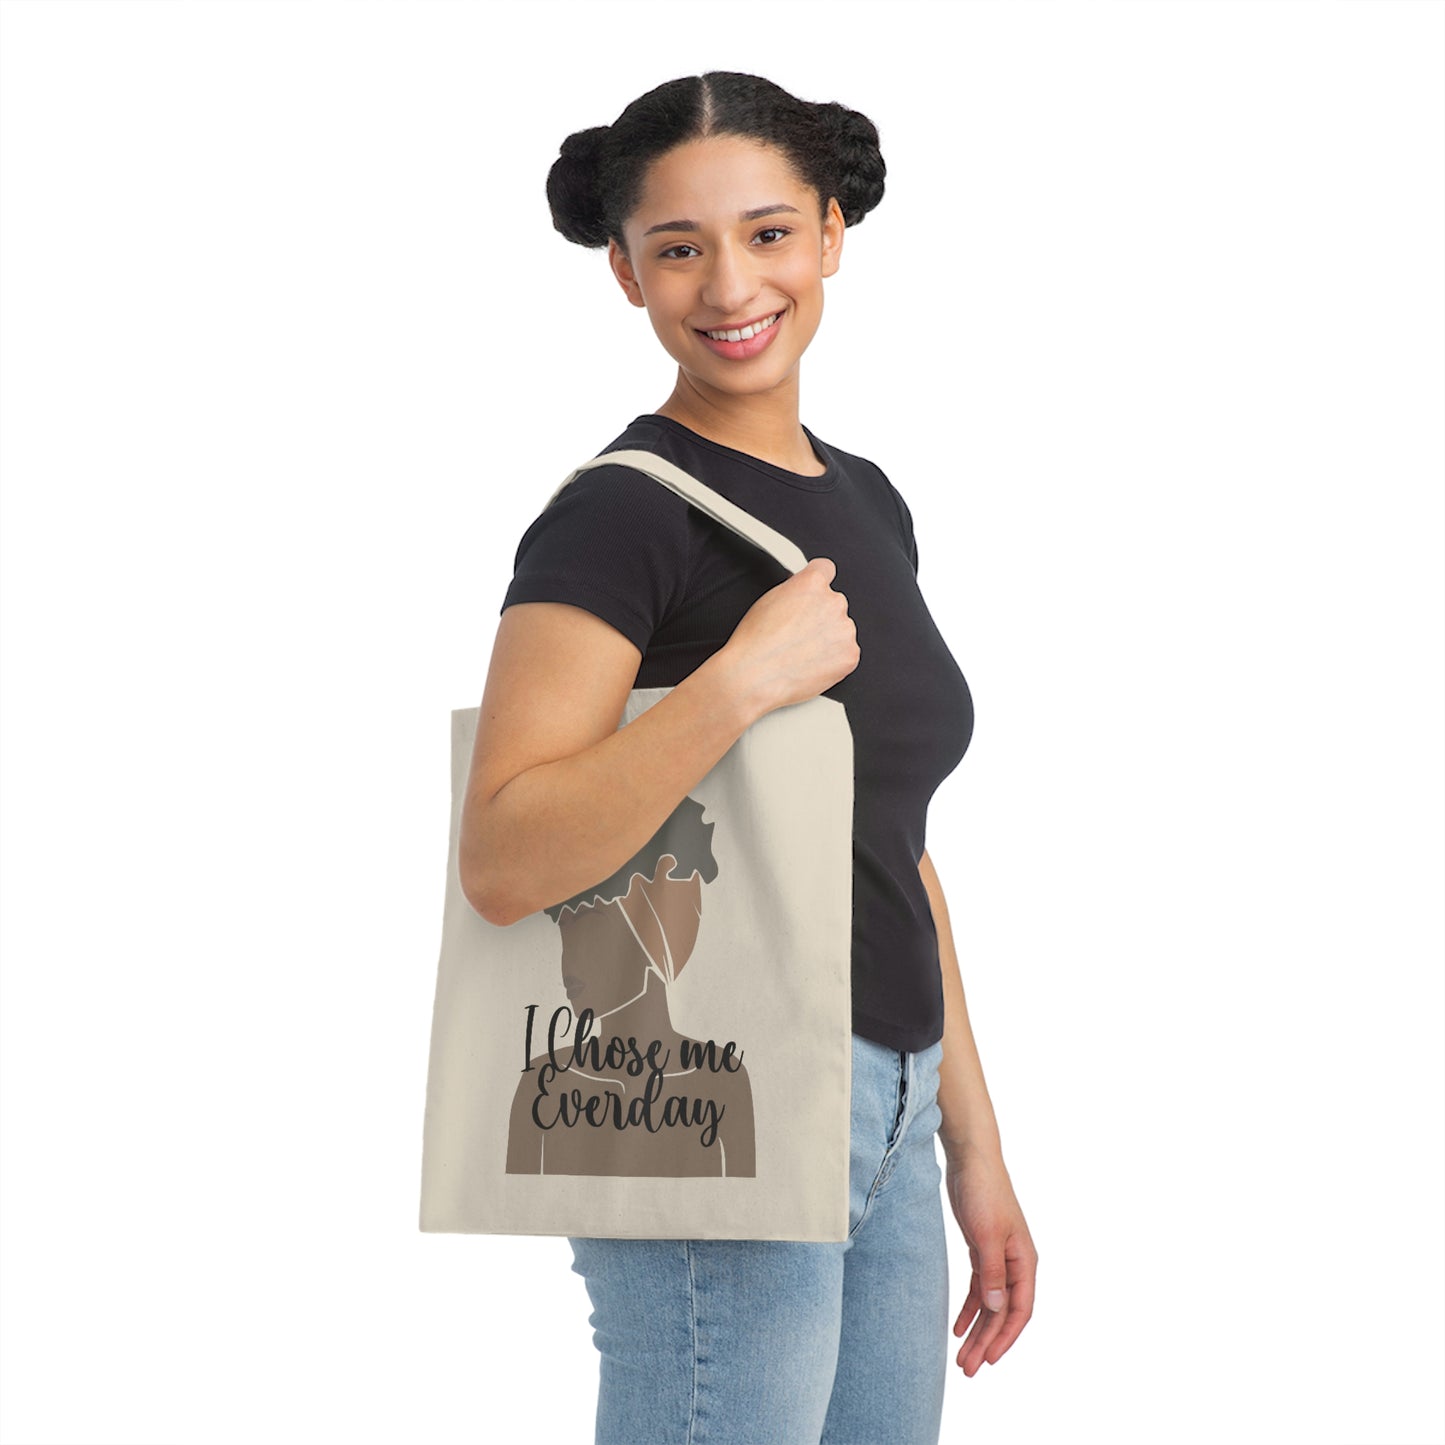 I Chose Me Everday Canvas Tote Bag-Tote Bag for Black Women-Shoulder Bag-Affirmation Tote Bag